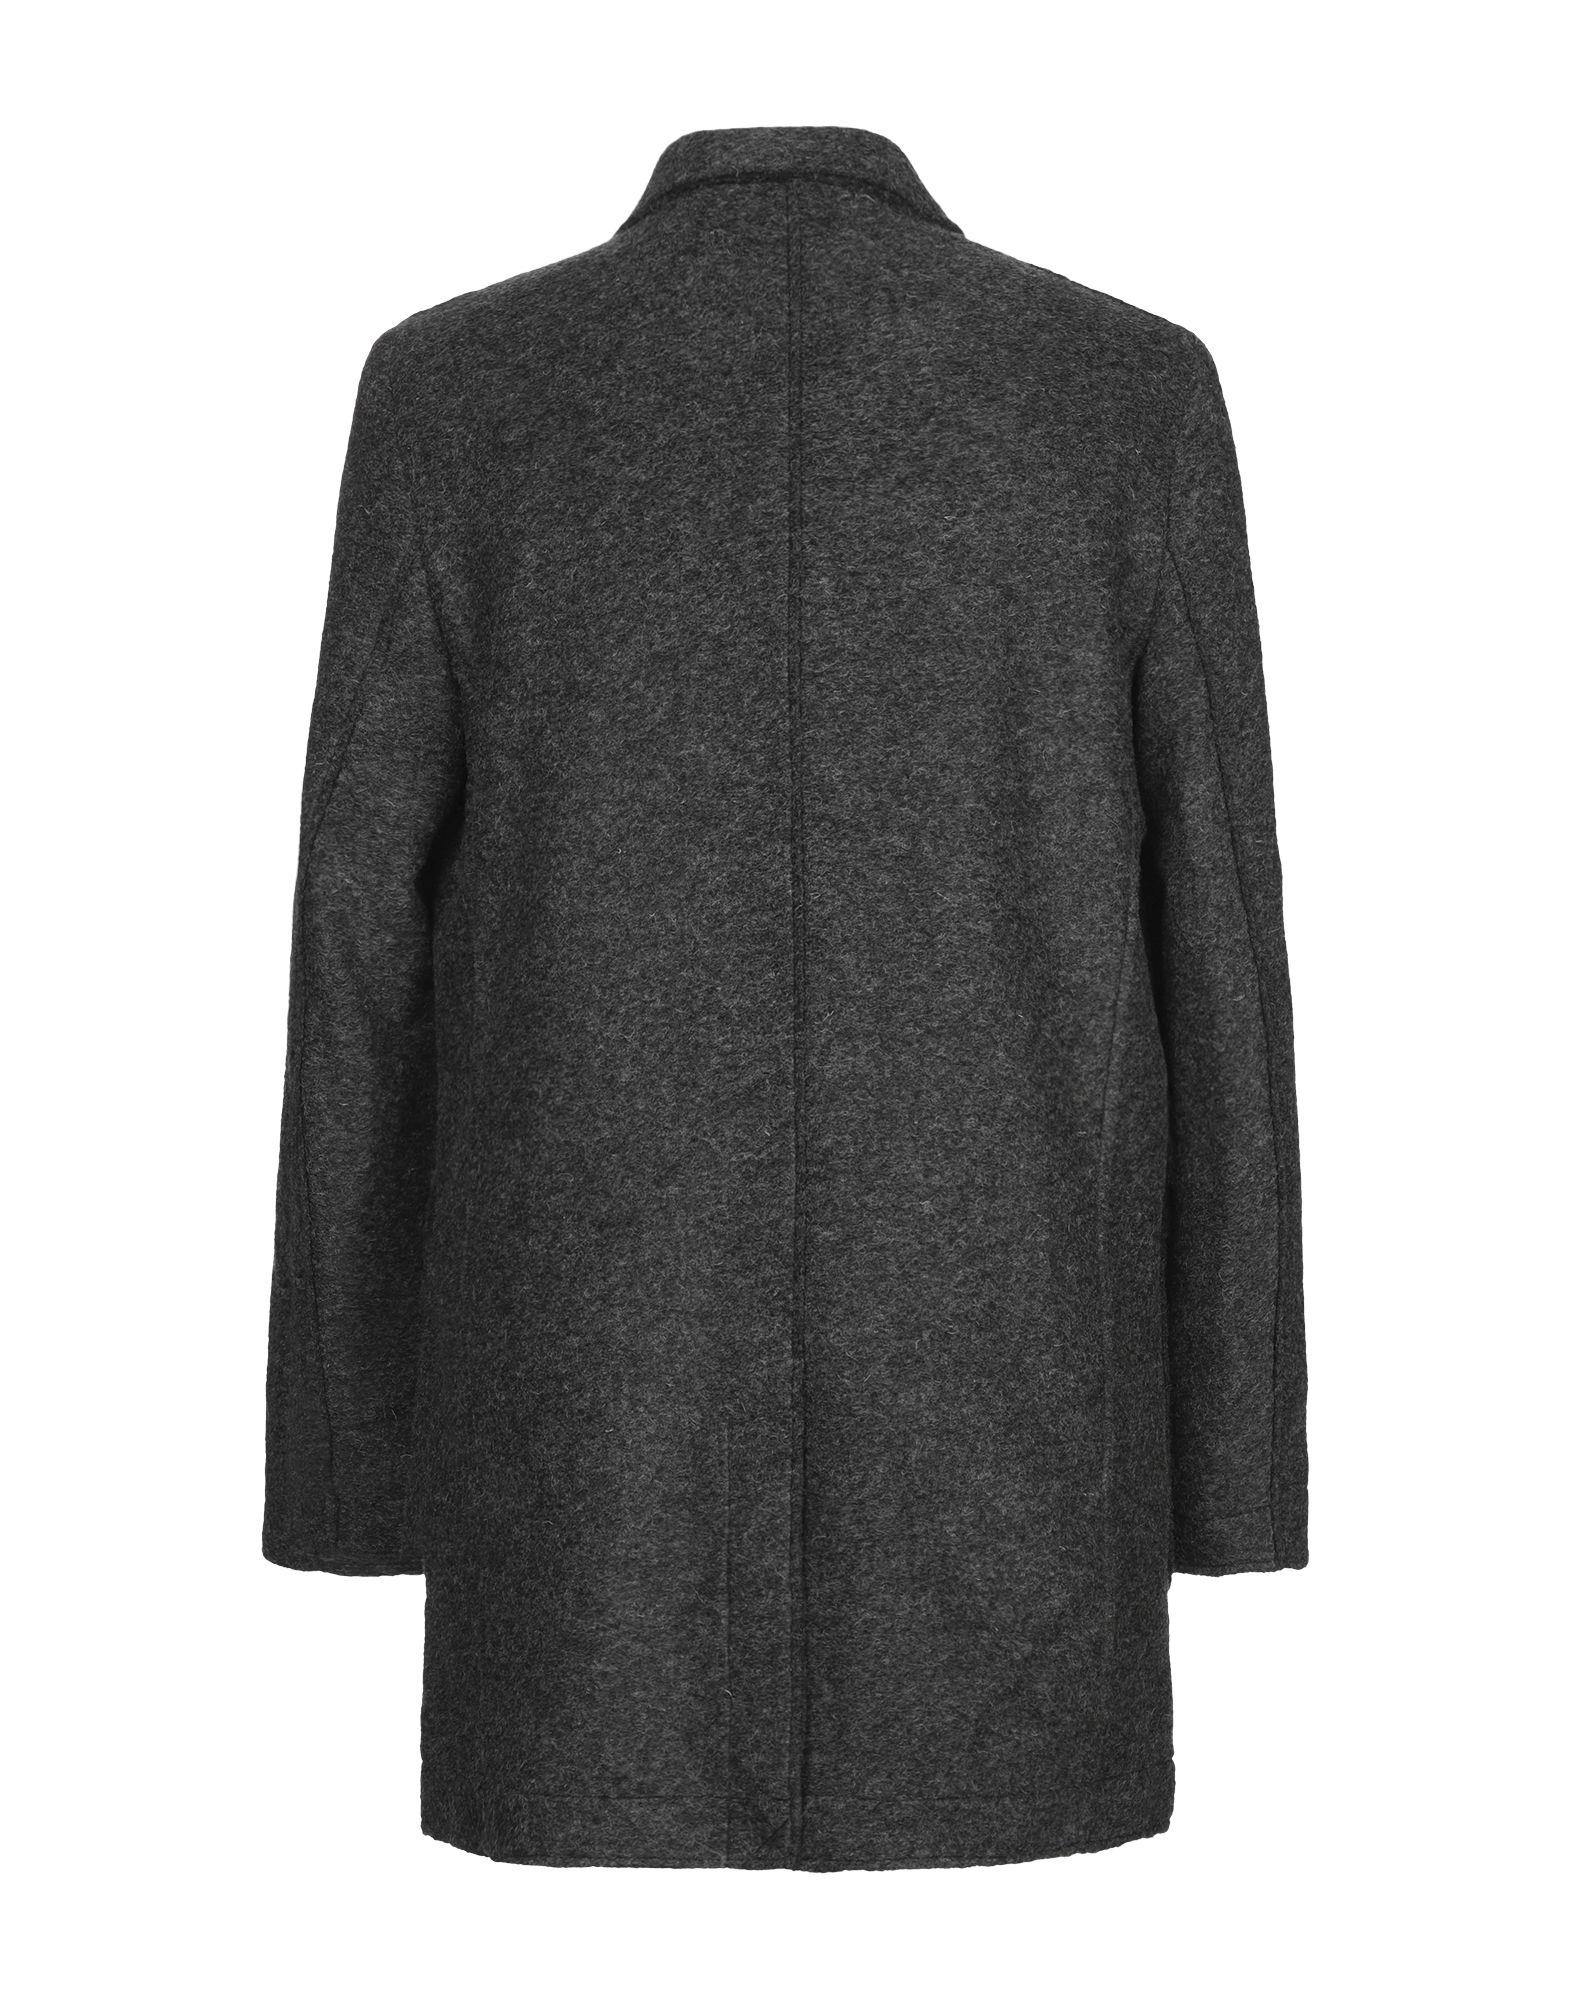 Minimum Wool Coat in Lead (Gray) for Men - Lyst